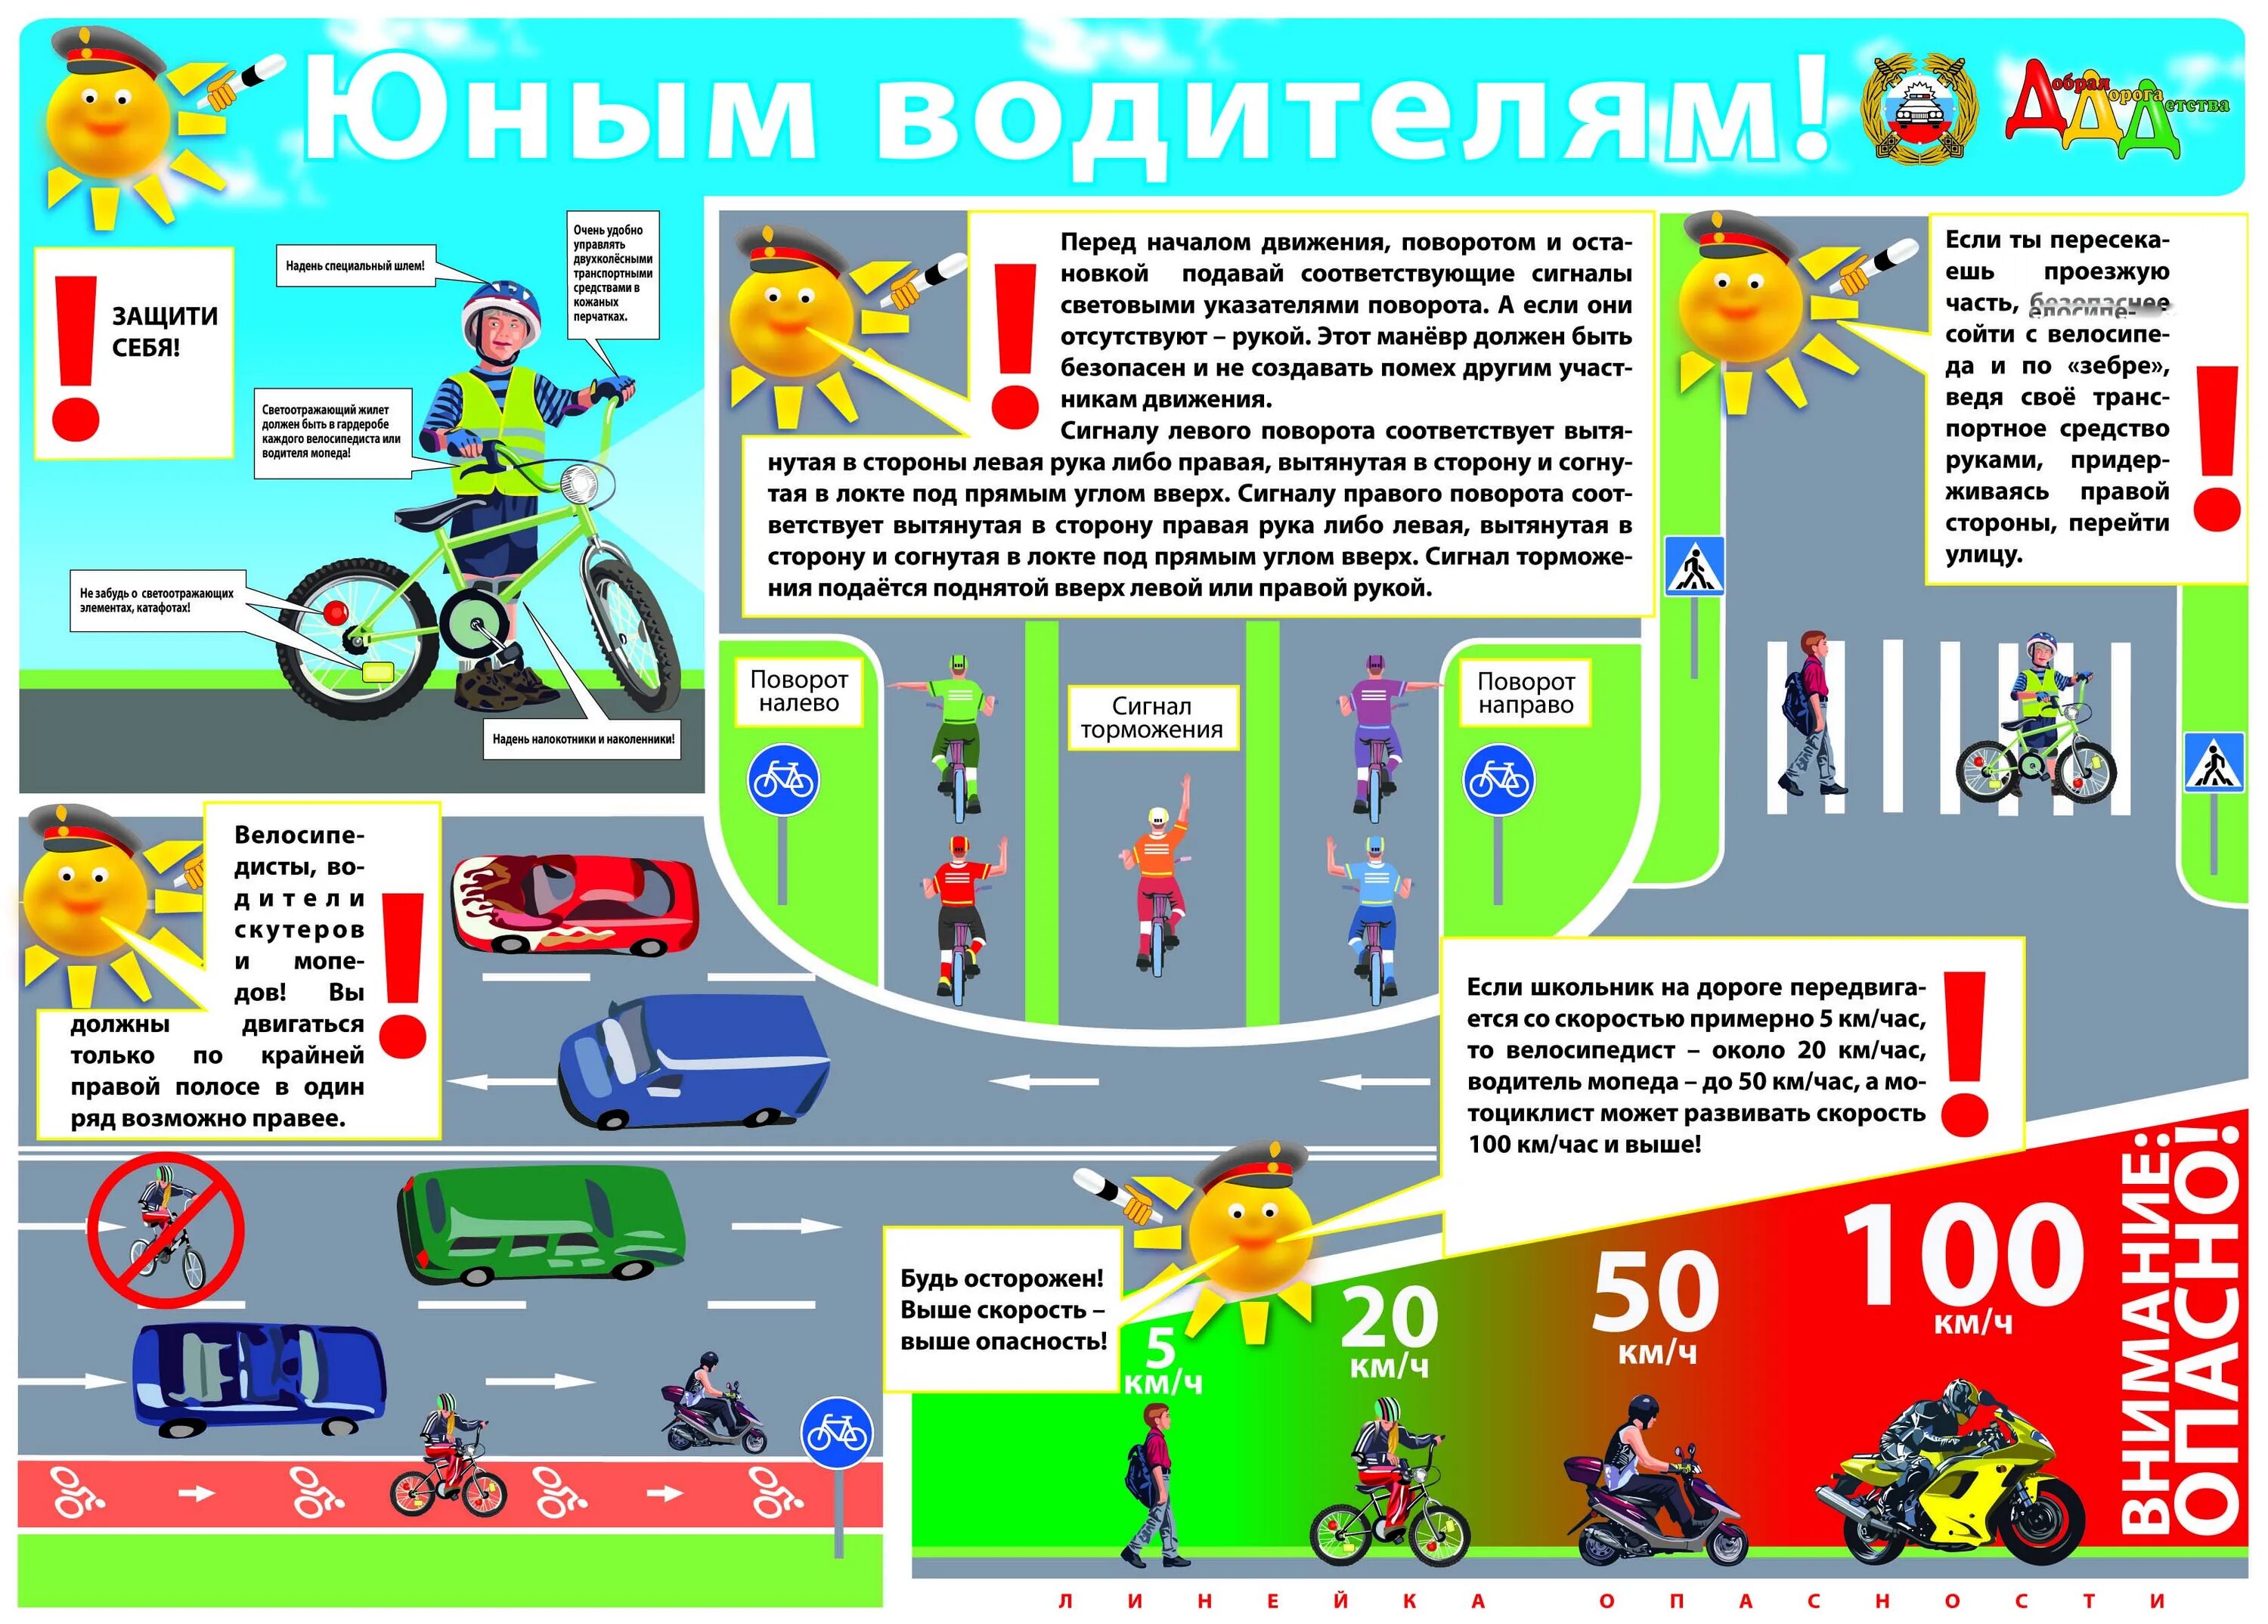 Правили дд. Памятка юного велосипедиста для детей. Плакат по правилам дорожного движения для детей. Правило дорожного движение. Правила дорожного движения для детей.